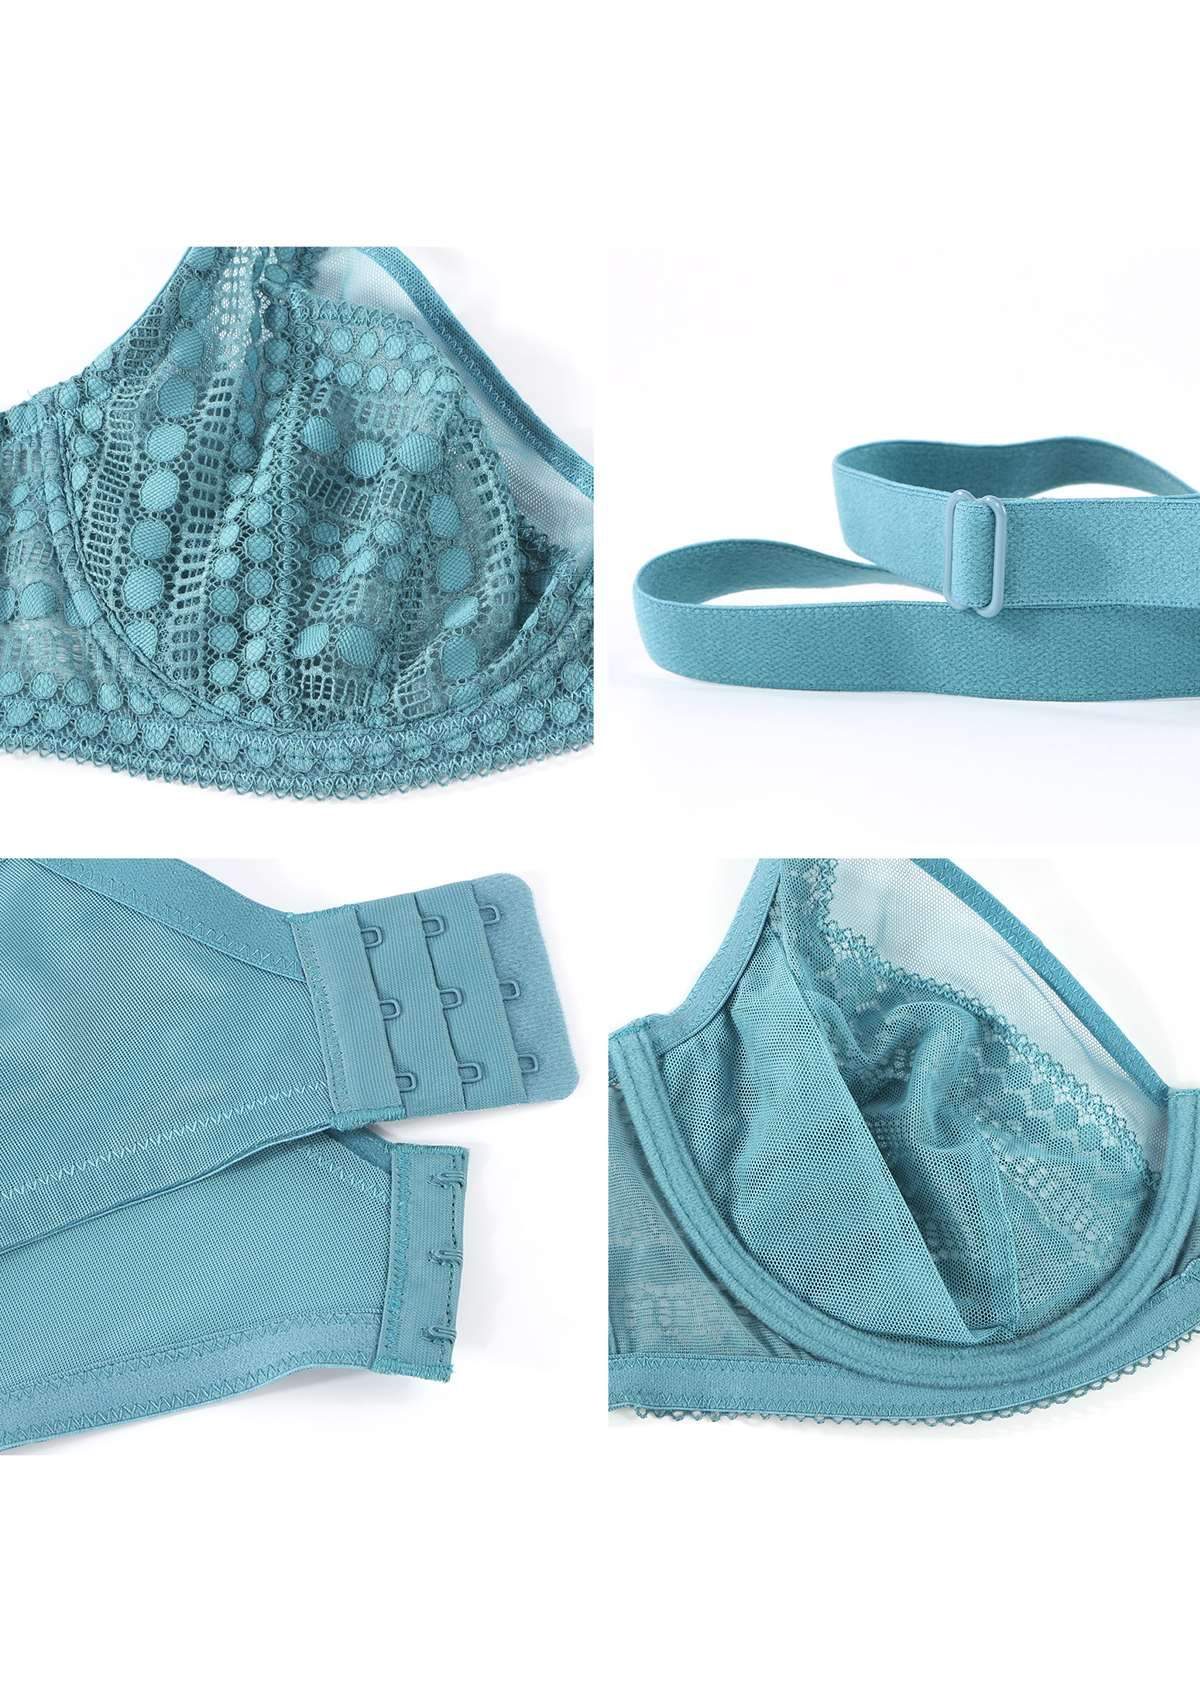 HSIA Heroine Matching Bra And Underwear Set: Bra For Big Boobs - Brittany Blue / 38 / C